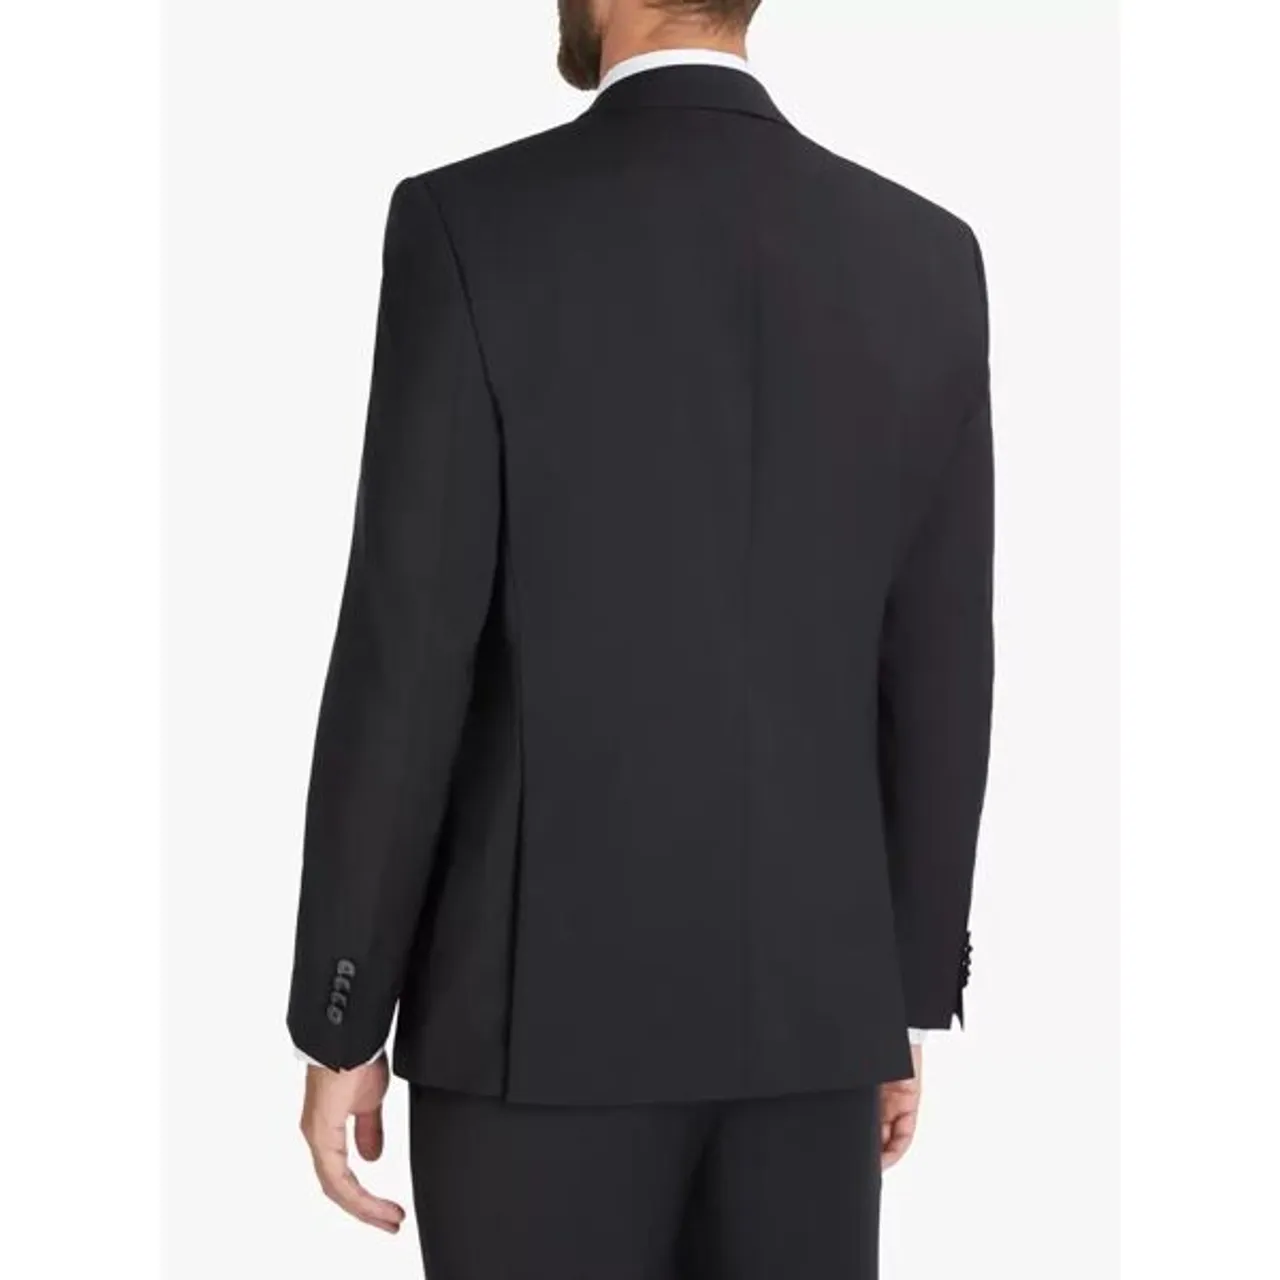 Hugo Boss BOSS Huge Virgin Wool Slim Fit Suit Jacket - Black - Male